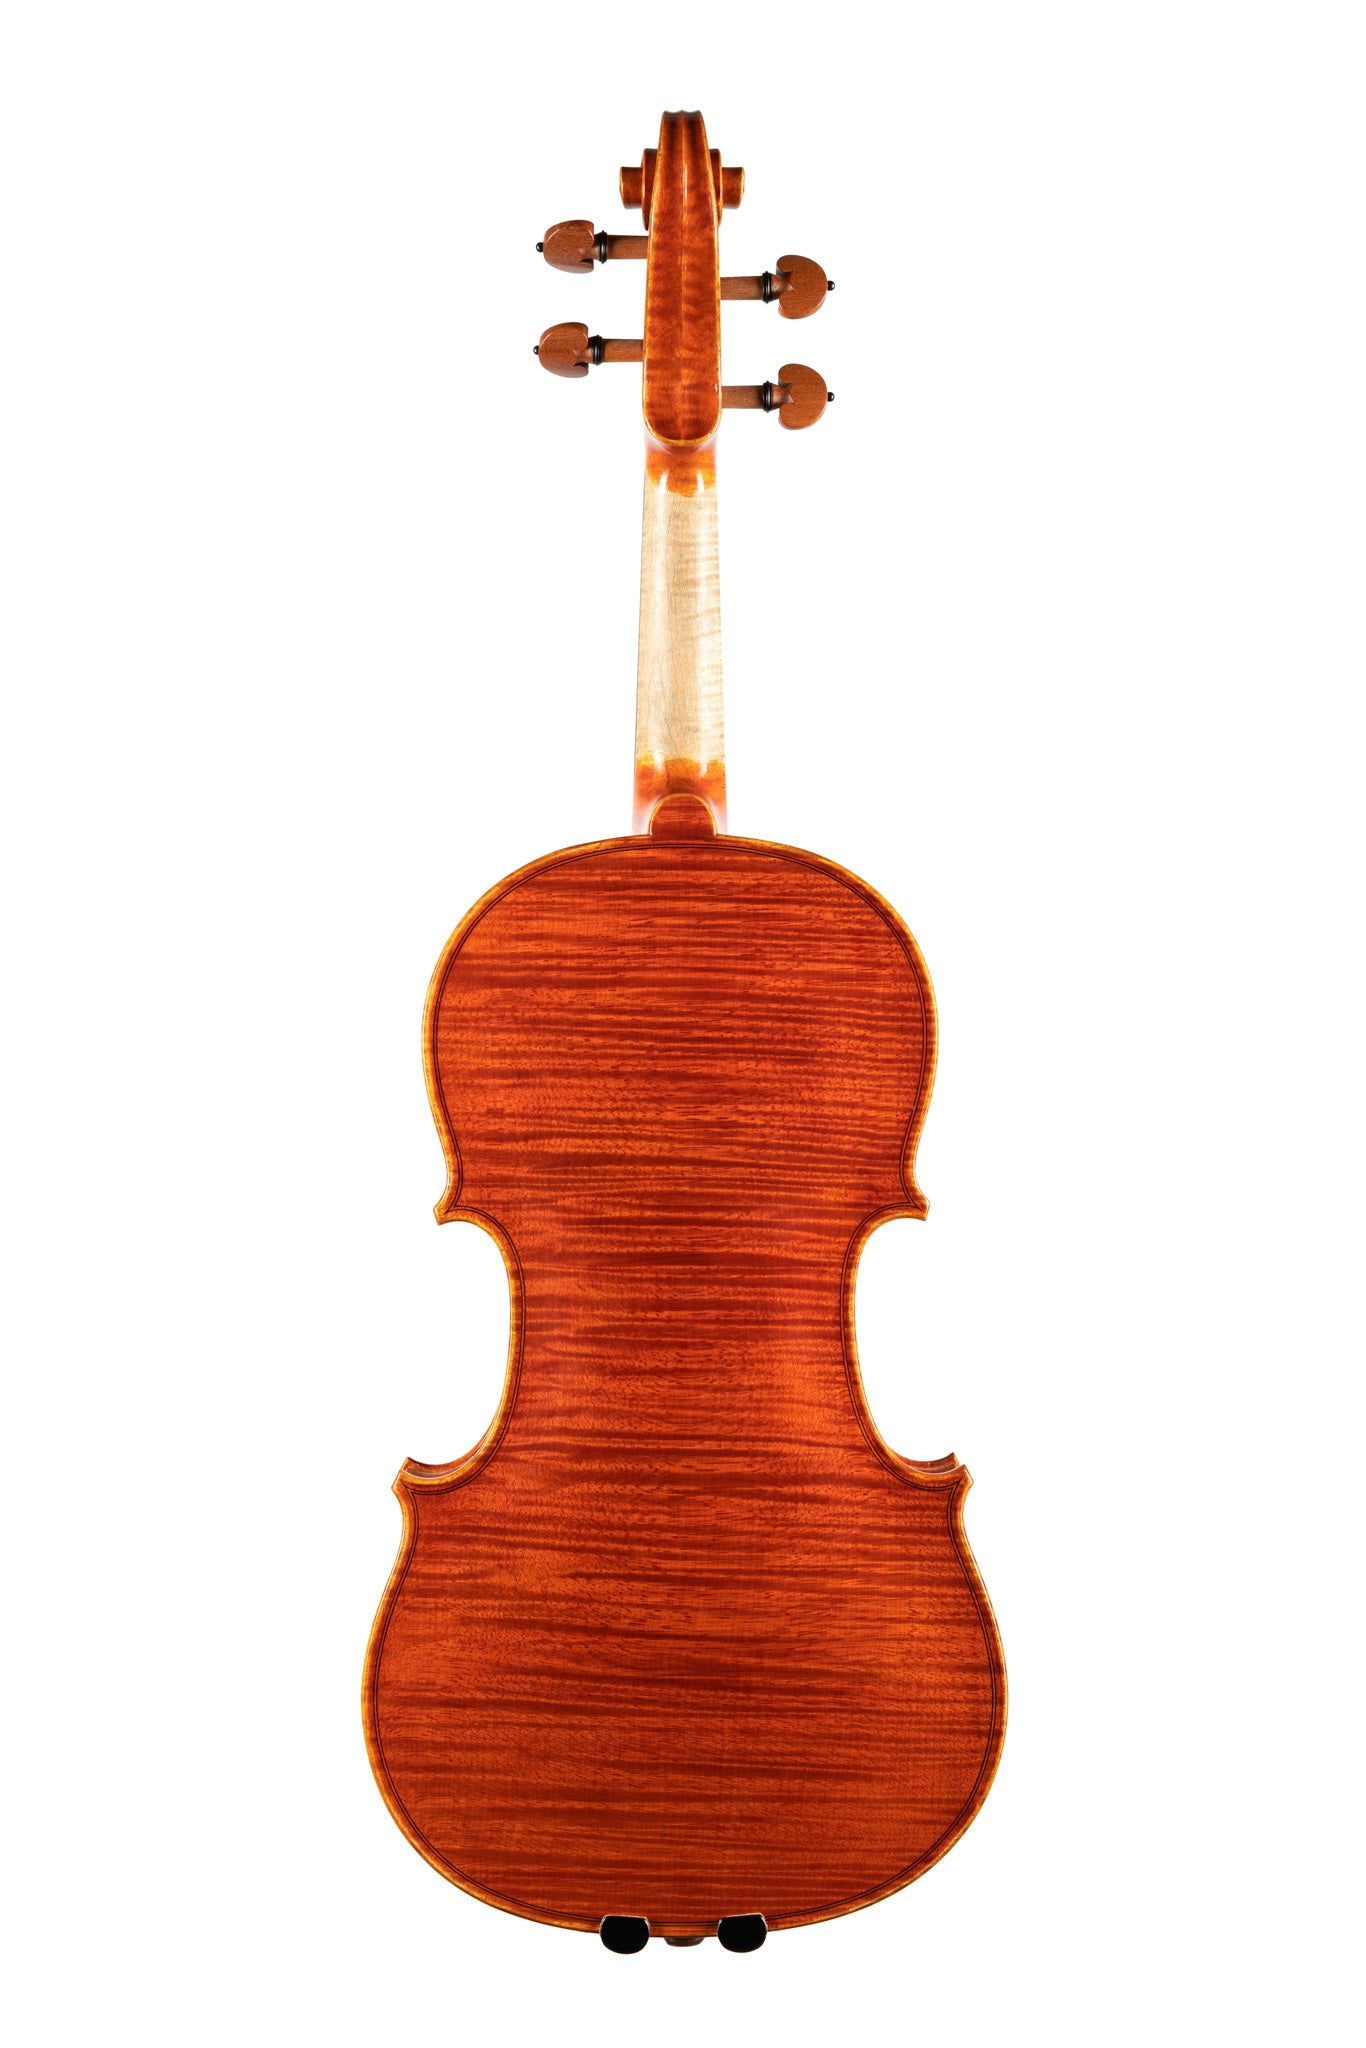 BL-800小提琴